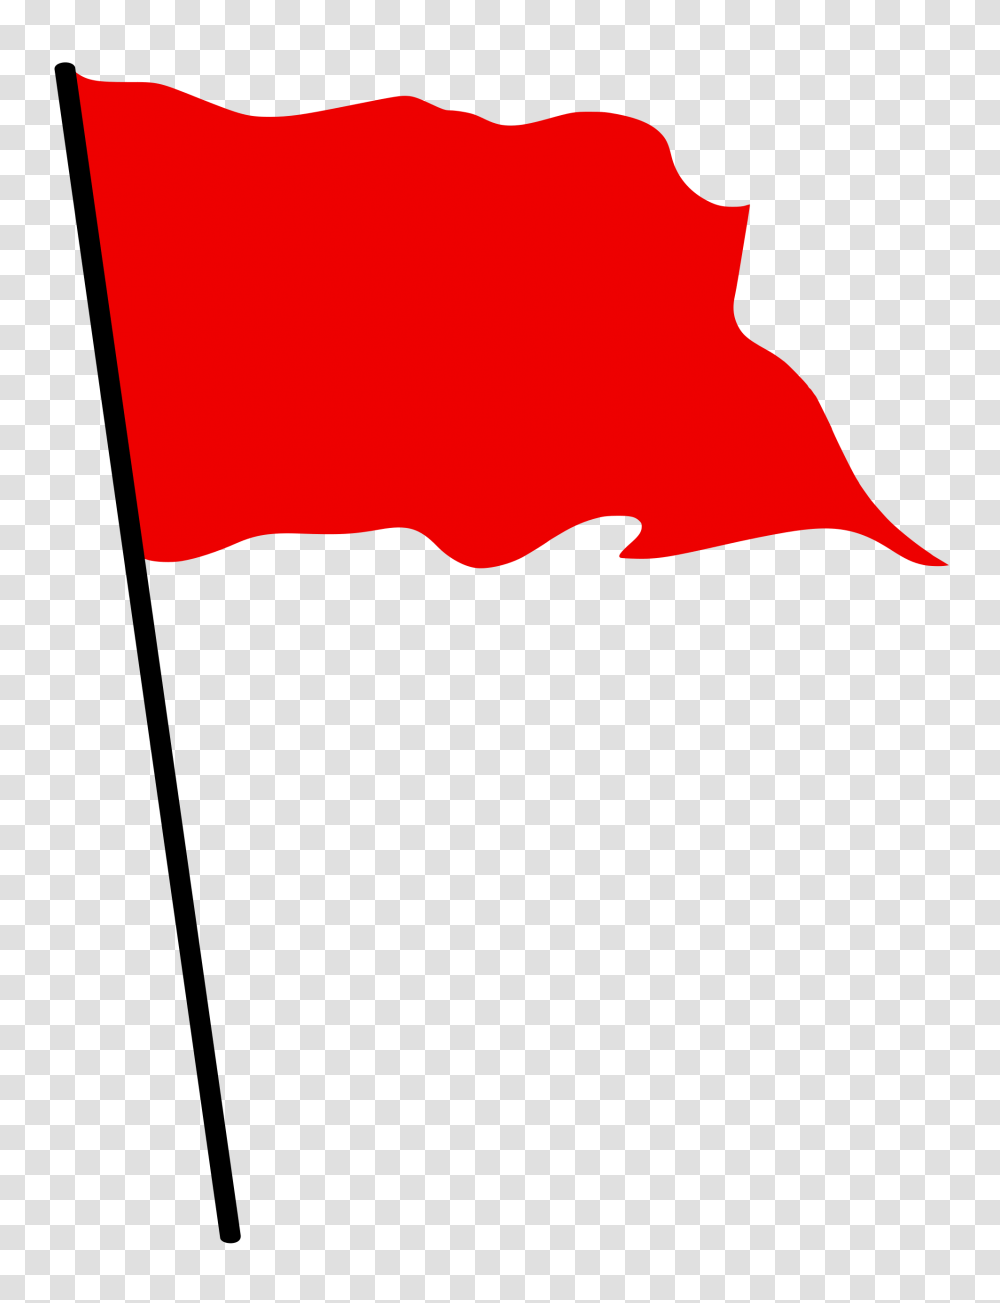 Red Waving Flag, Leaf, Plant, Tree, Petal Transparent Png